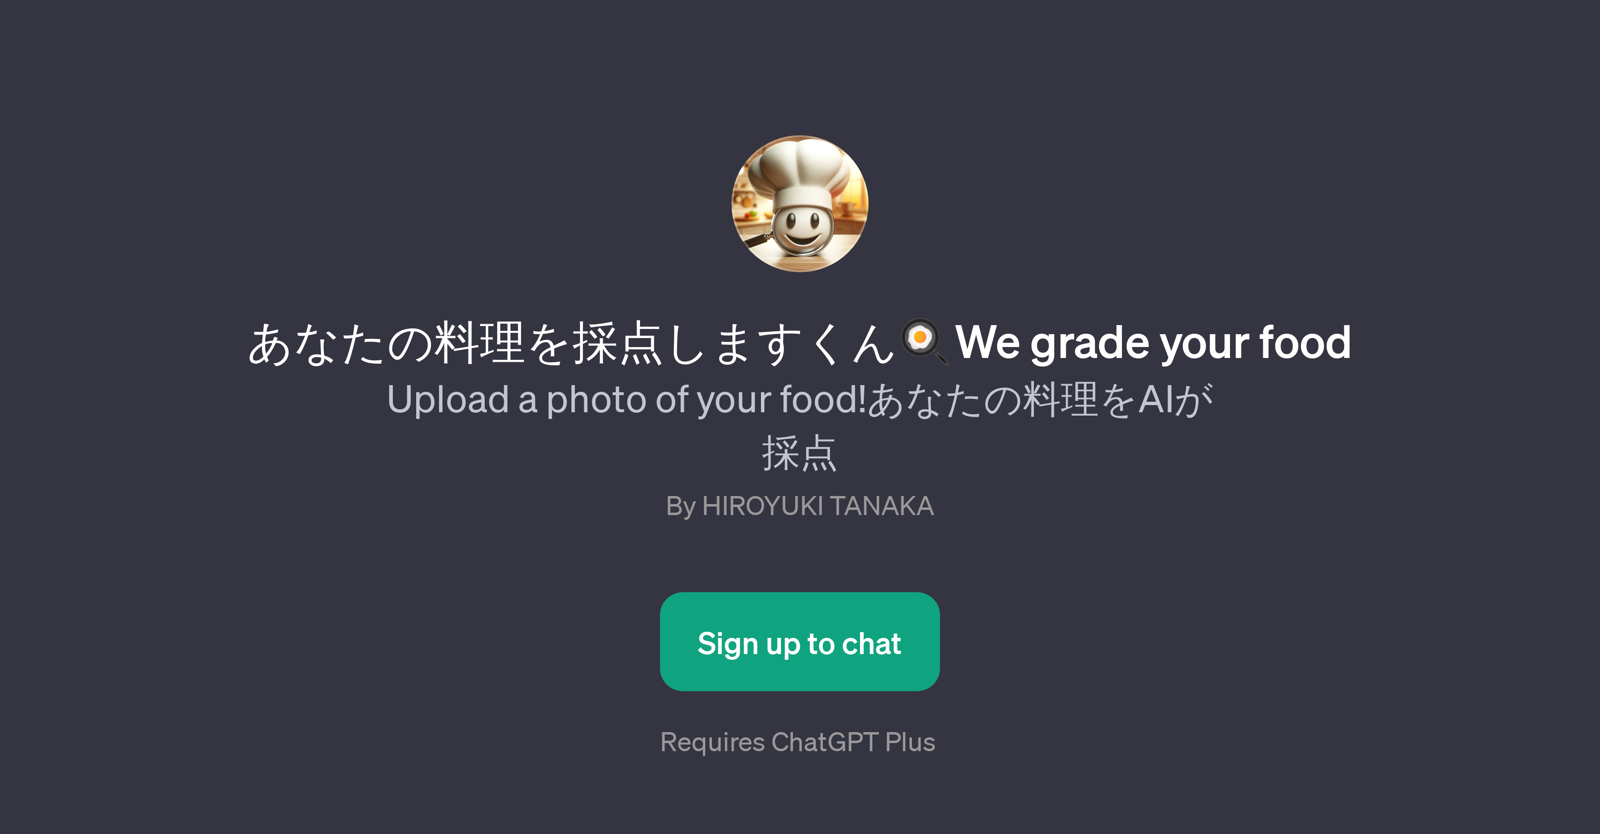 We grade your food website